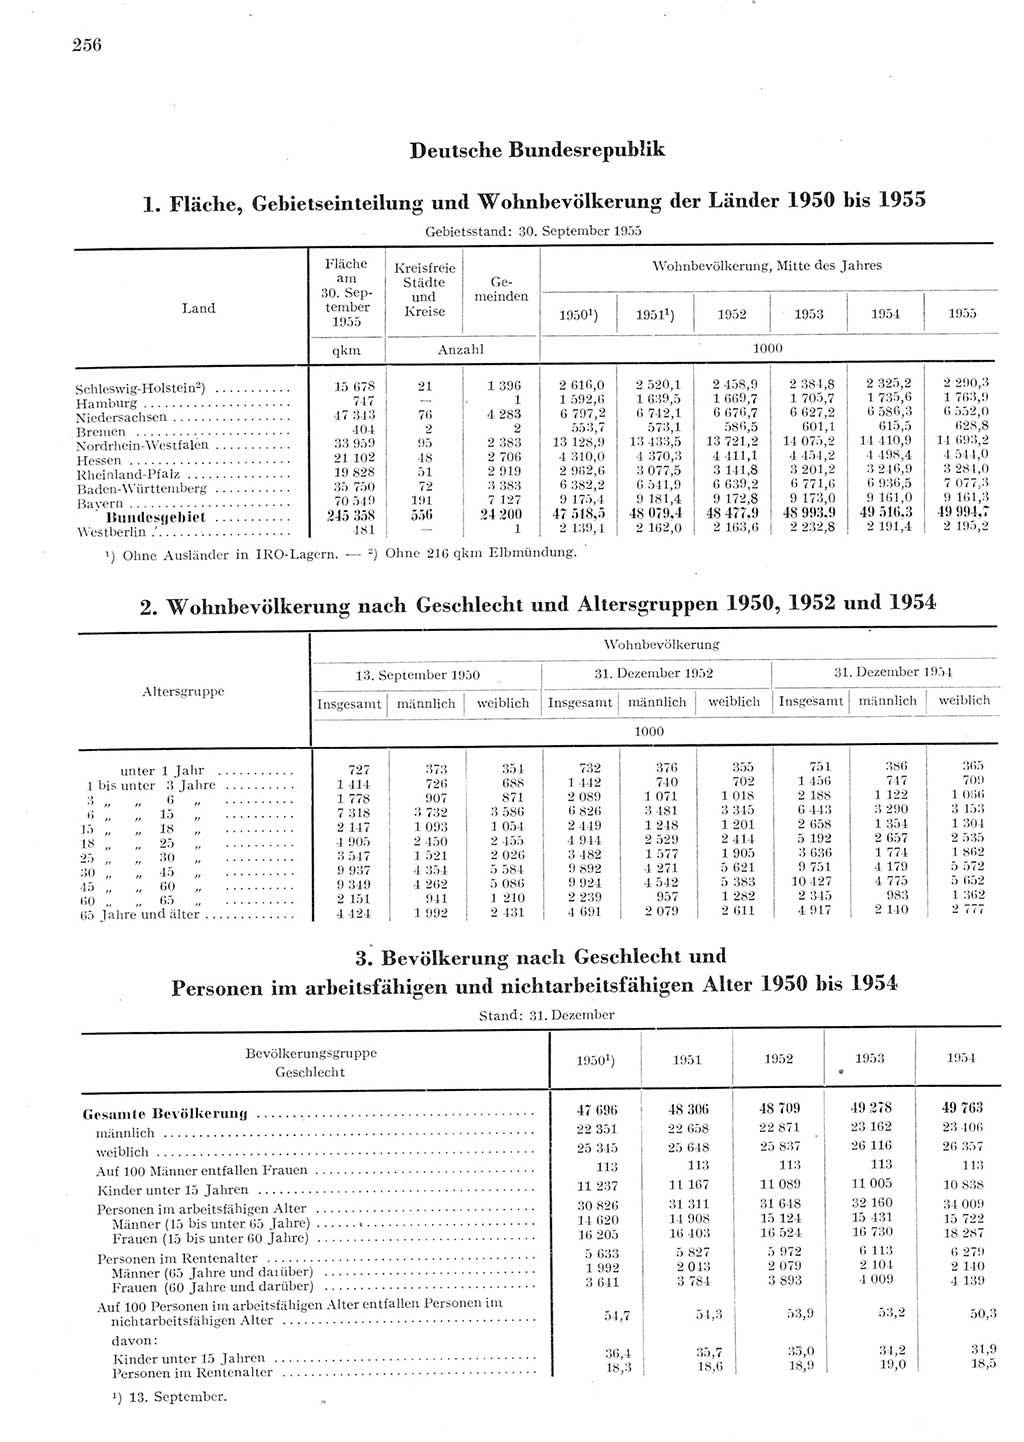 Statistisches Jahrbuch der Deutschen Demokratischen Republik (DDR) 1955, Seite 256 (Stat. Jb. DDR 1955, S. 256)